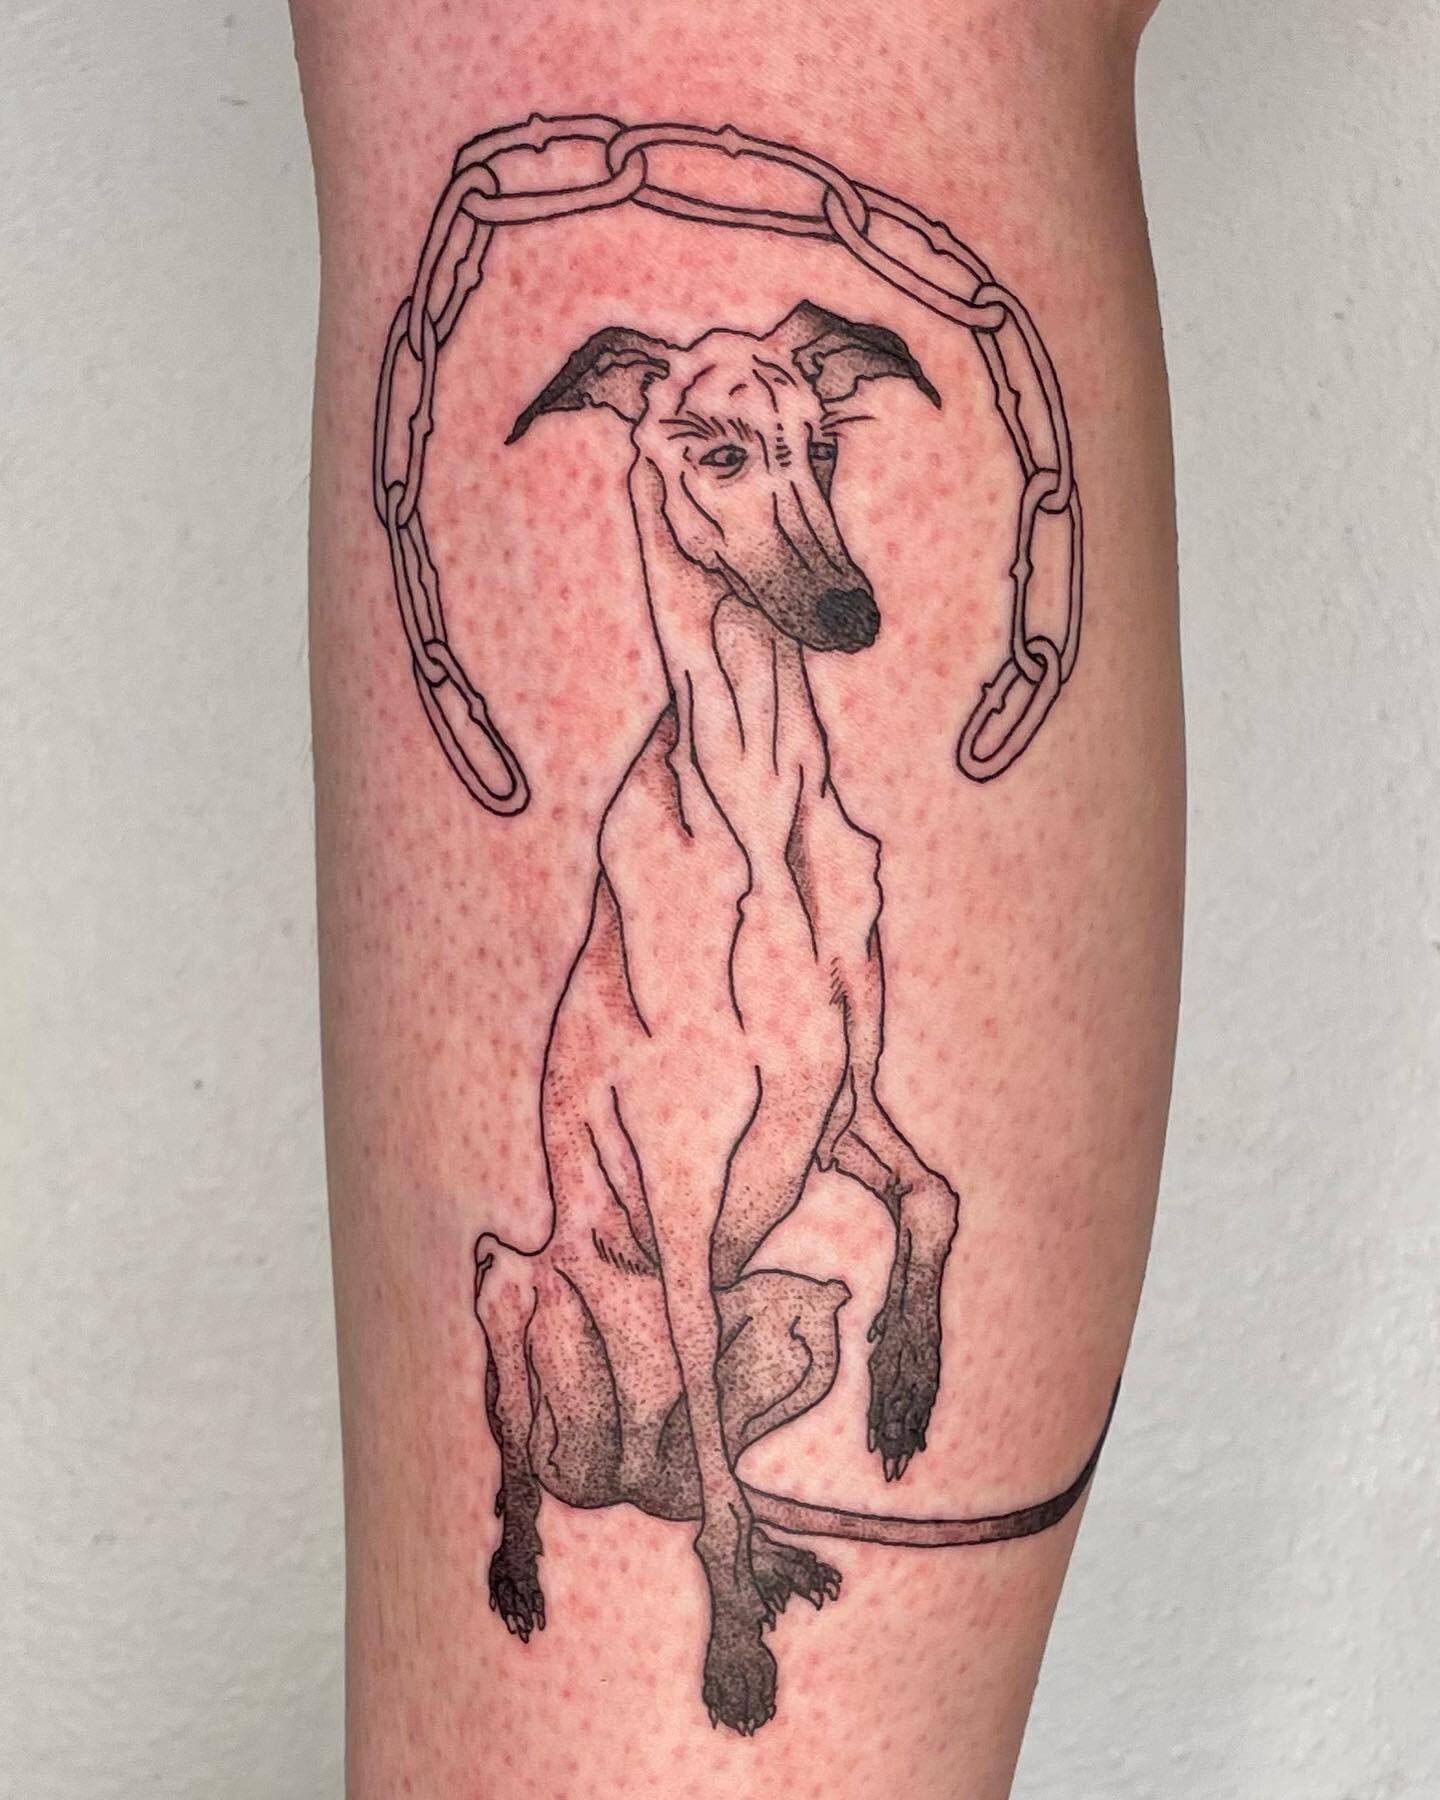 Thanks for getting this greyhound flash piece, Rachael! It was an absolute pleasure! 

#tattoo #pdxtattoo #pdxtattooartist #queertattooartist #art #queerart #lezliedorcus #blackworktattoo #lineworktattoo #qttr #flash #queertattoo #portlandtattoo  #cu